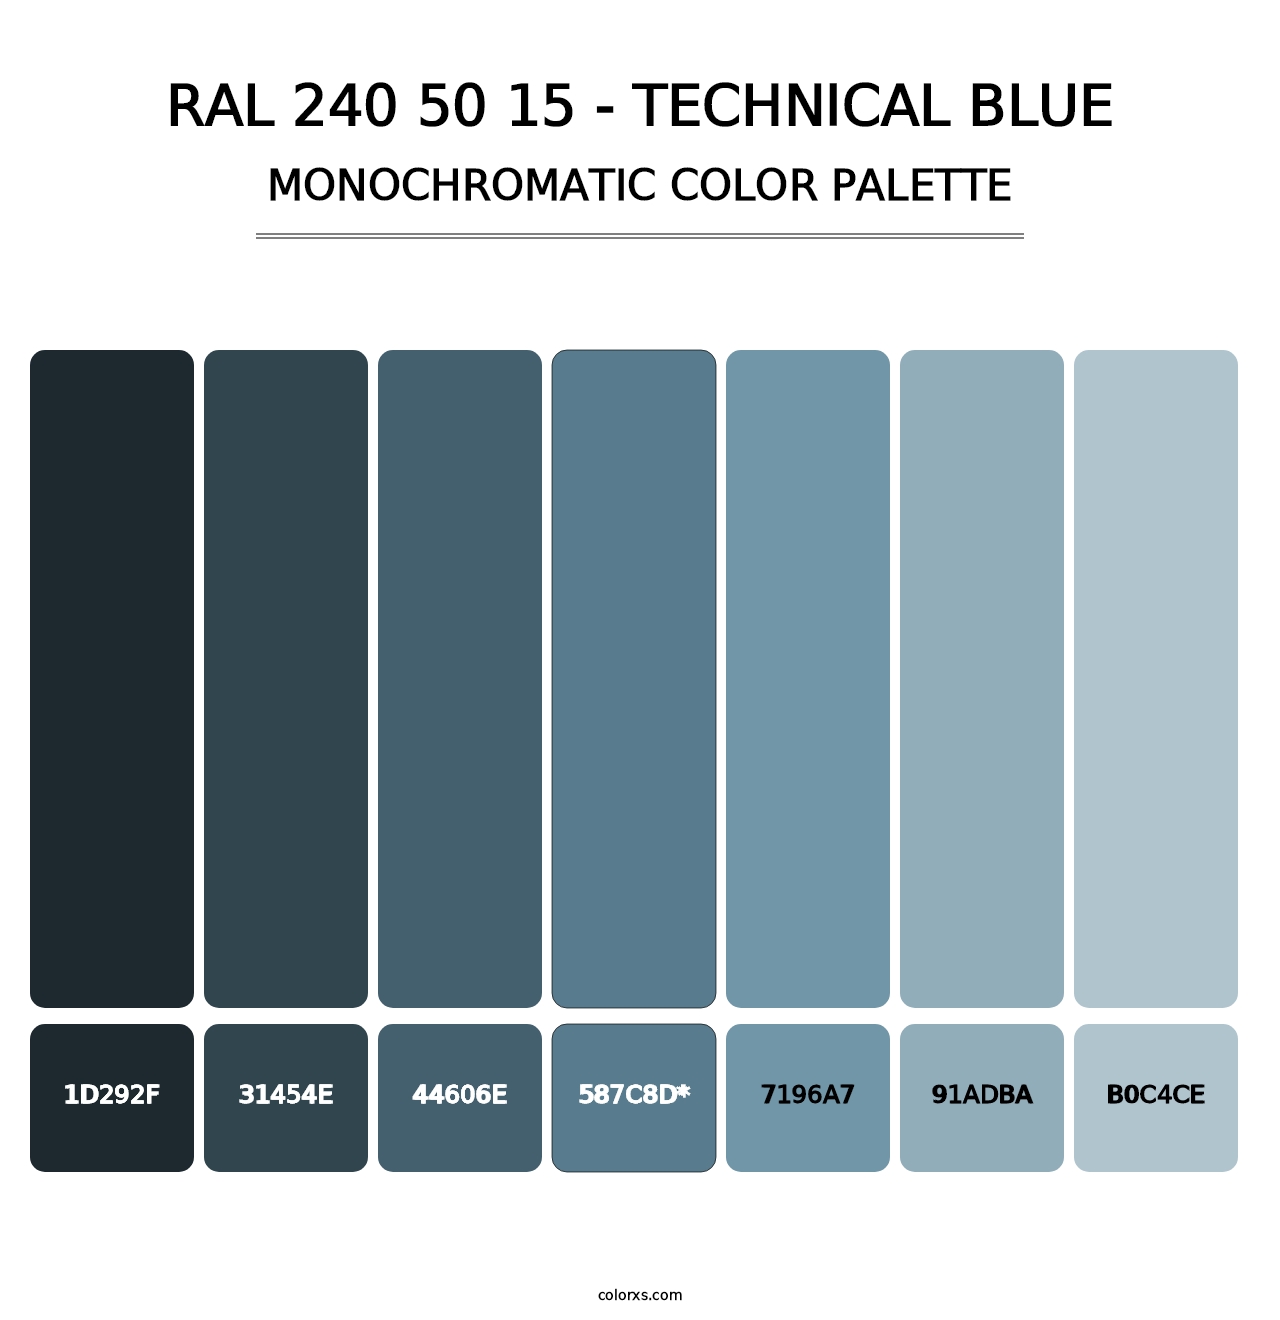 RAL 240 50 15 - Technical Blue - Monochromatic Color Palette